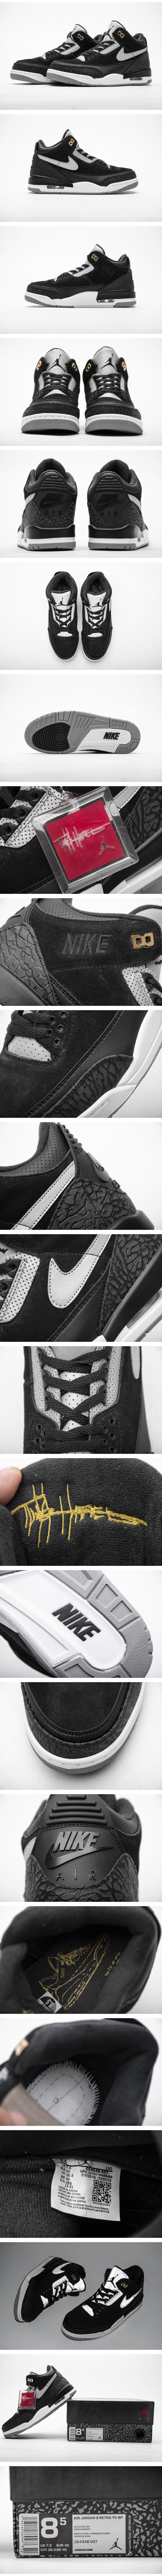 Nike Air Jordan 3 Retro Tinker Black Cement Gold CK4348-007 ナイキ エアジョーダン3 ティンカーハットフィールド ブラック セメント ゴールド